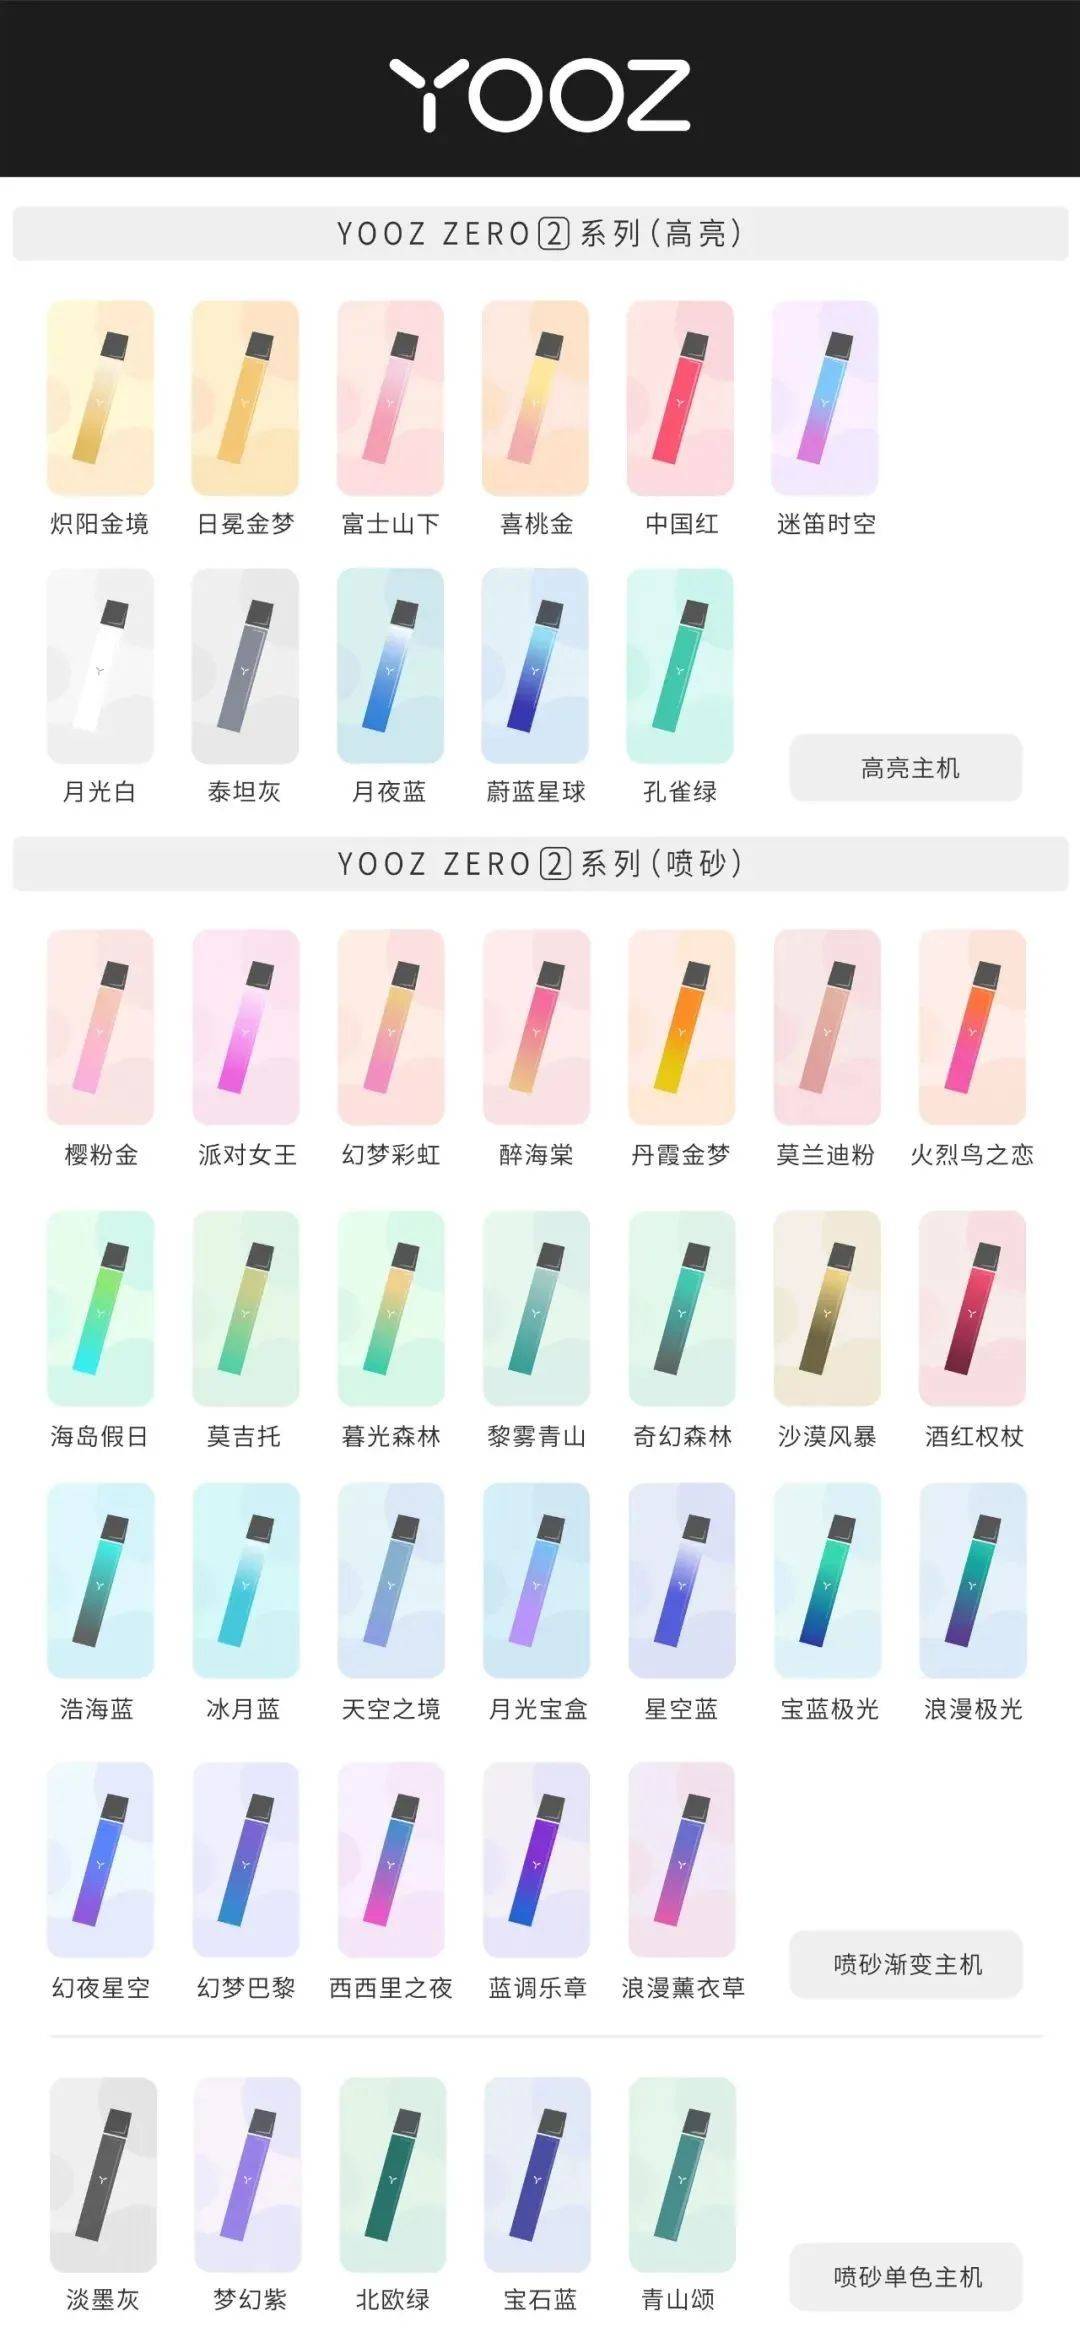 yooz柚子电子烟测评柚子二代各种颜色介绍